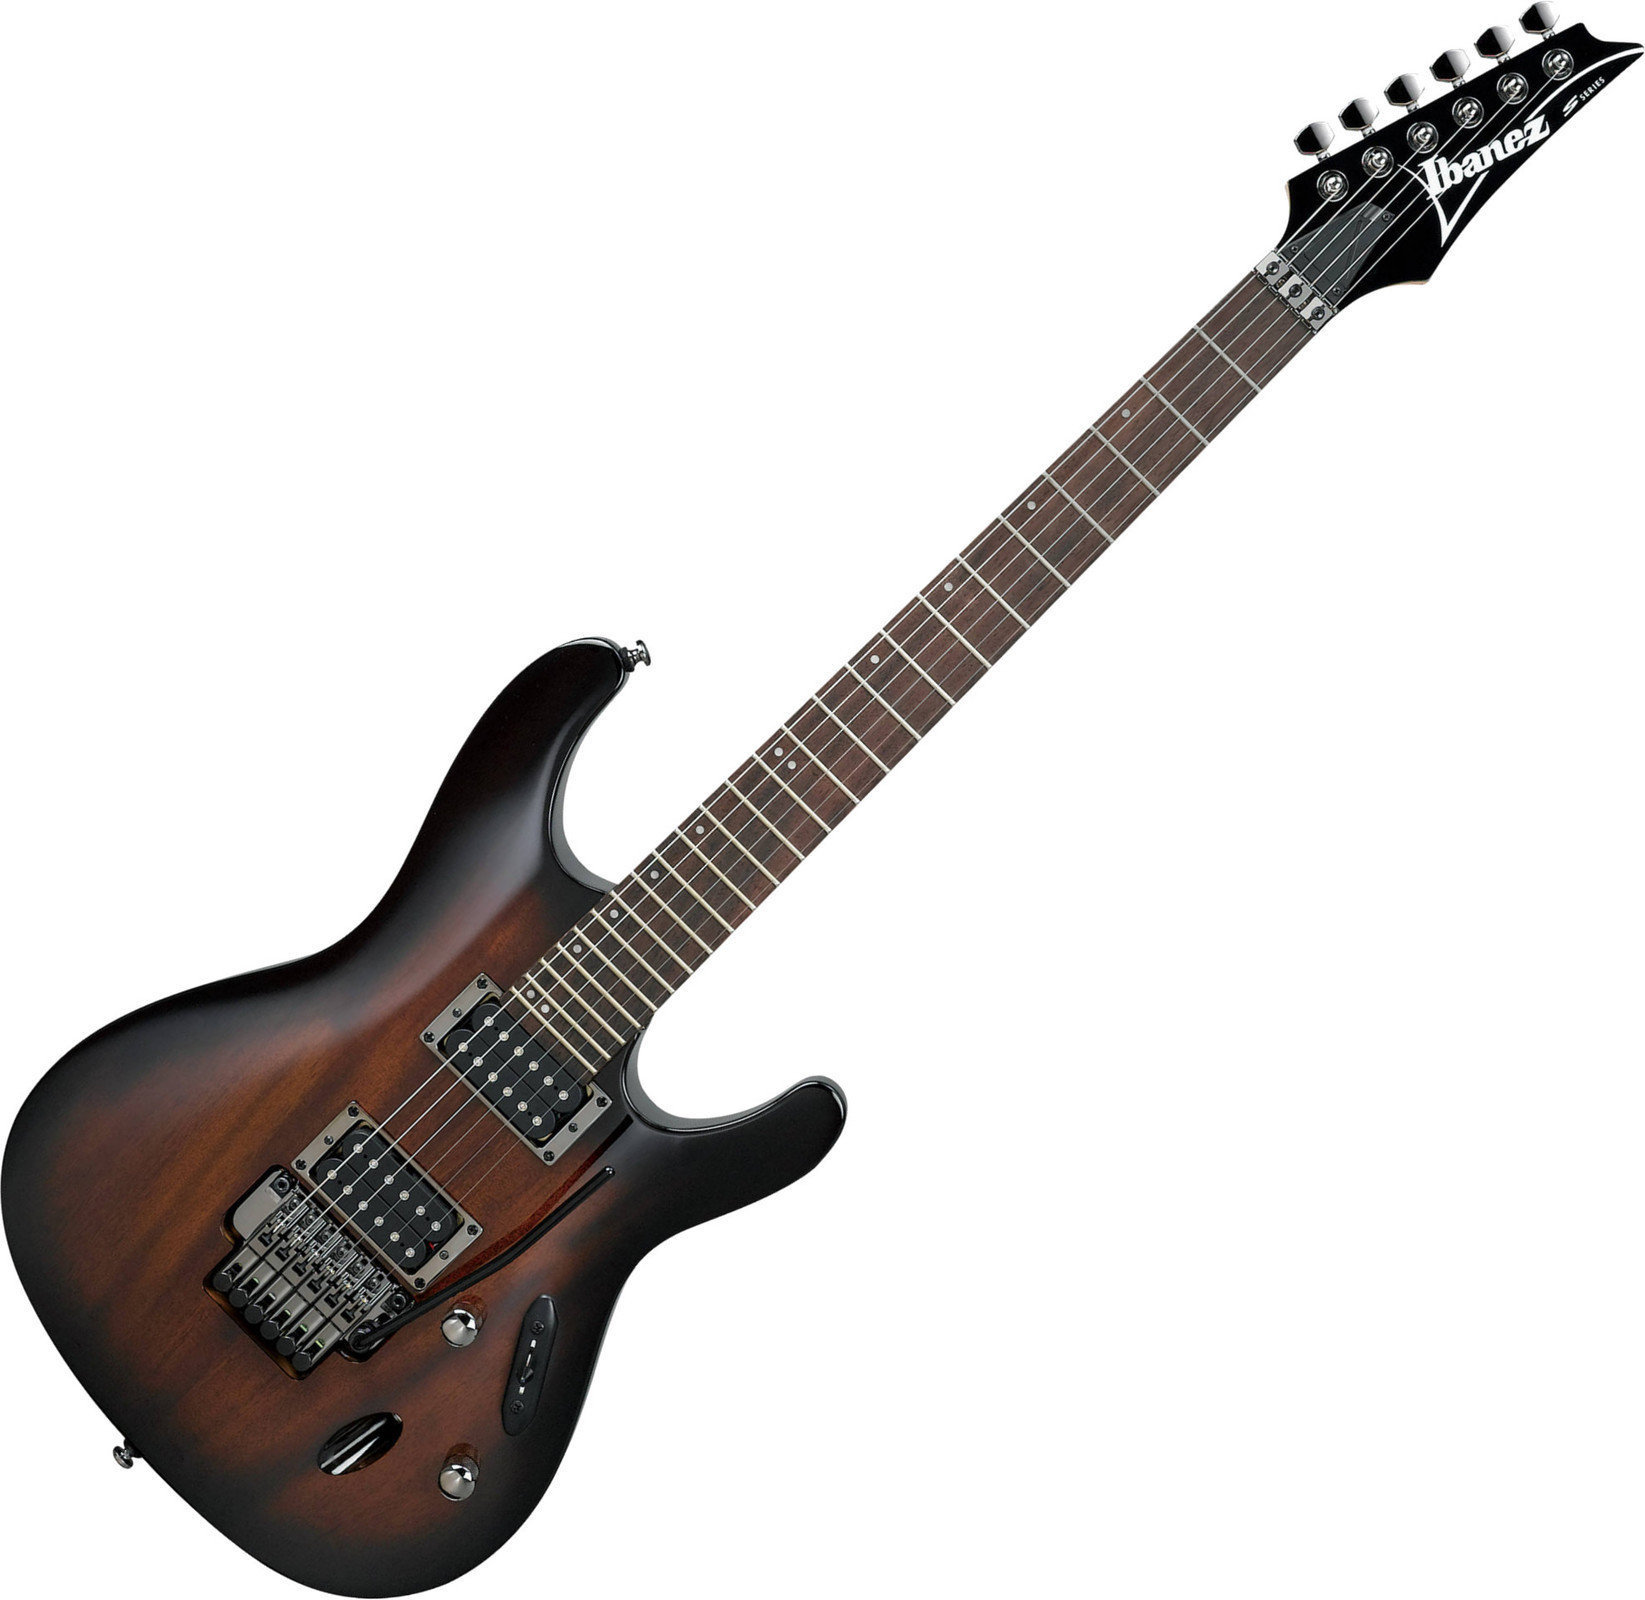 Ηλεκτρική Κιθάρα Ibanez S520 transparent Black Sunburst High Gloss